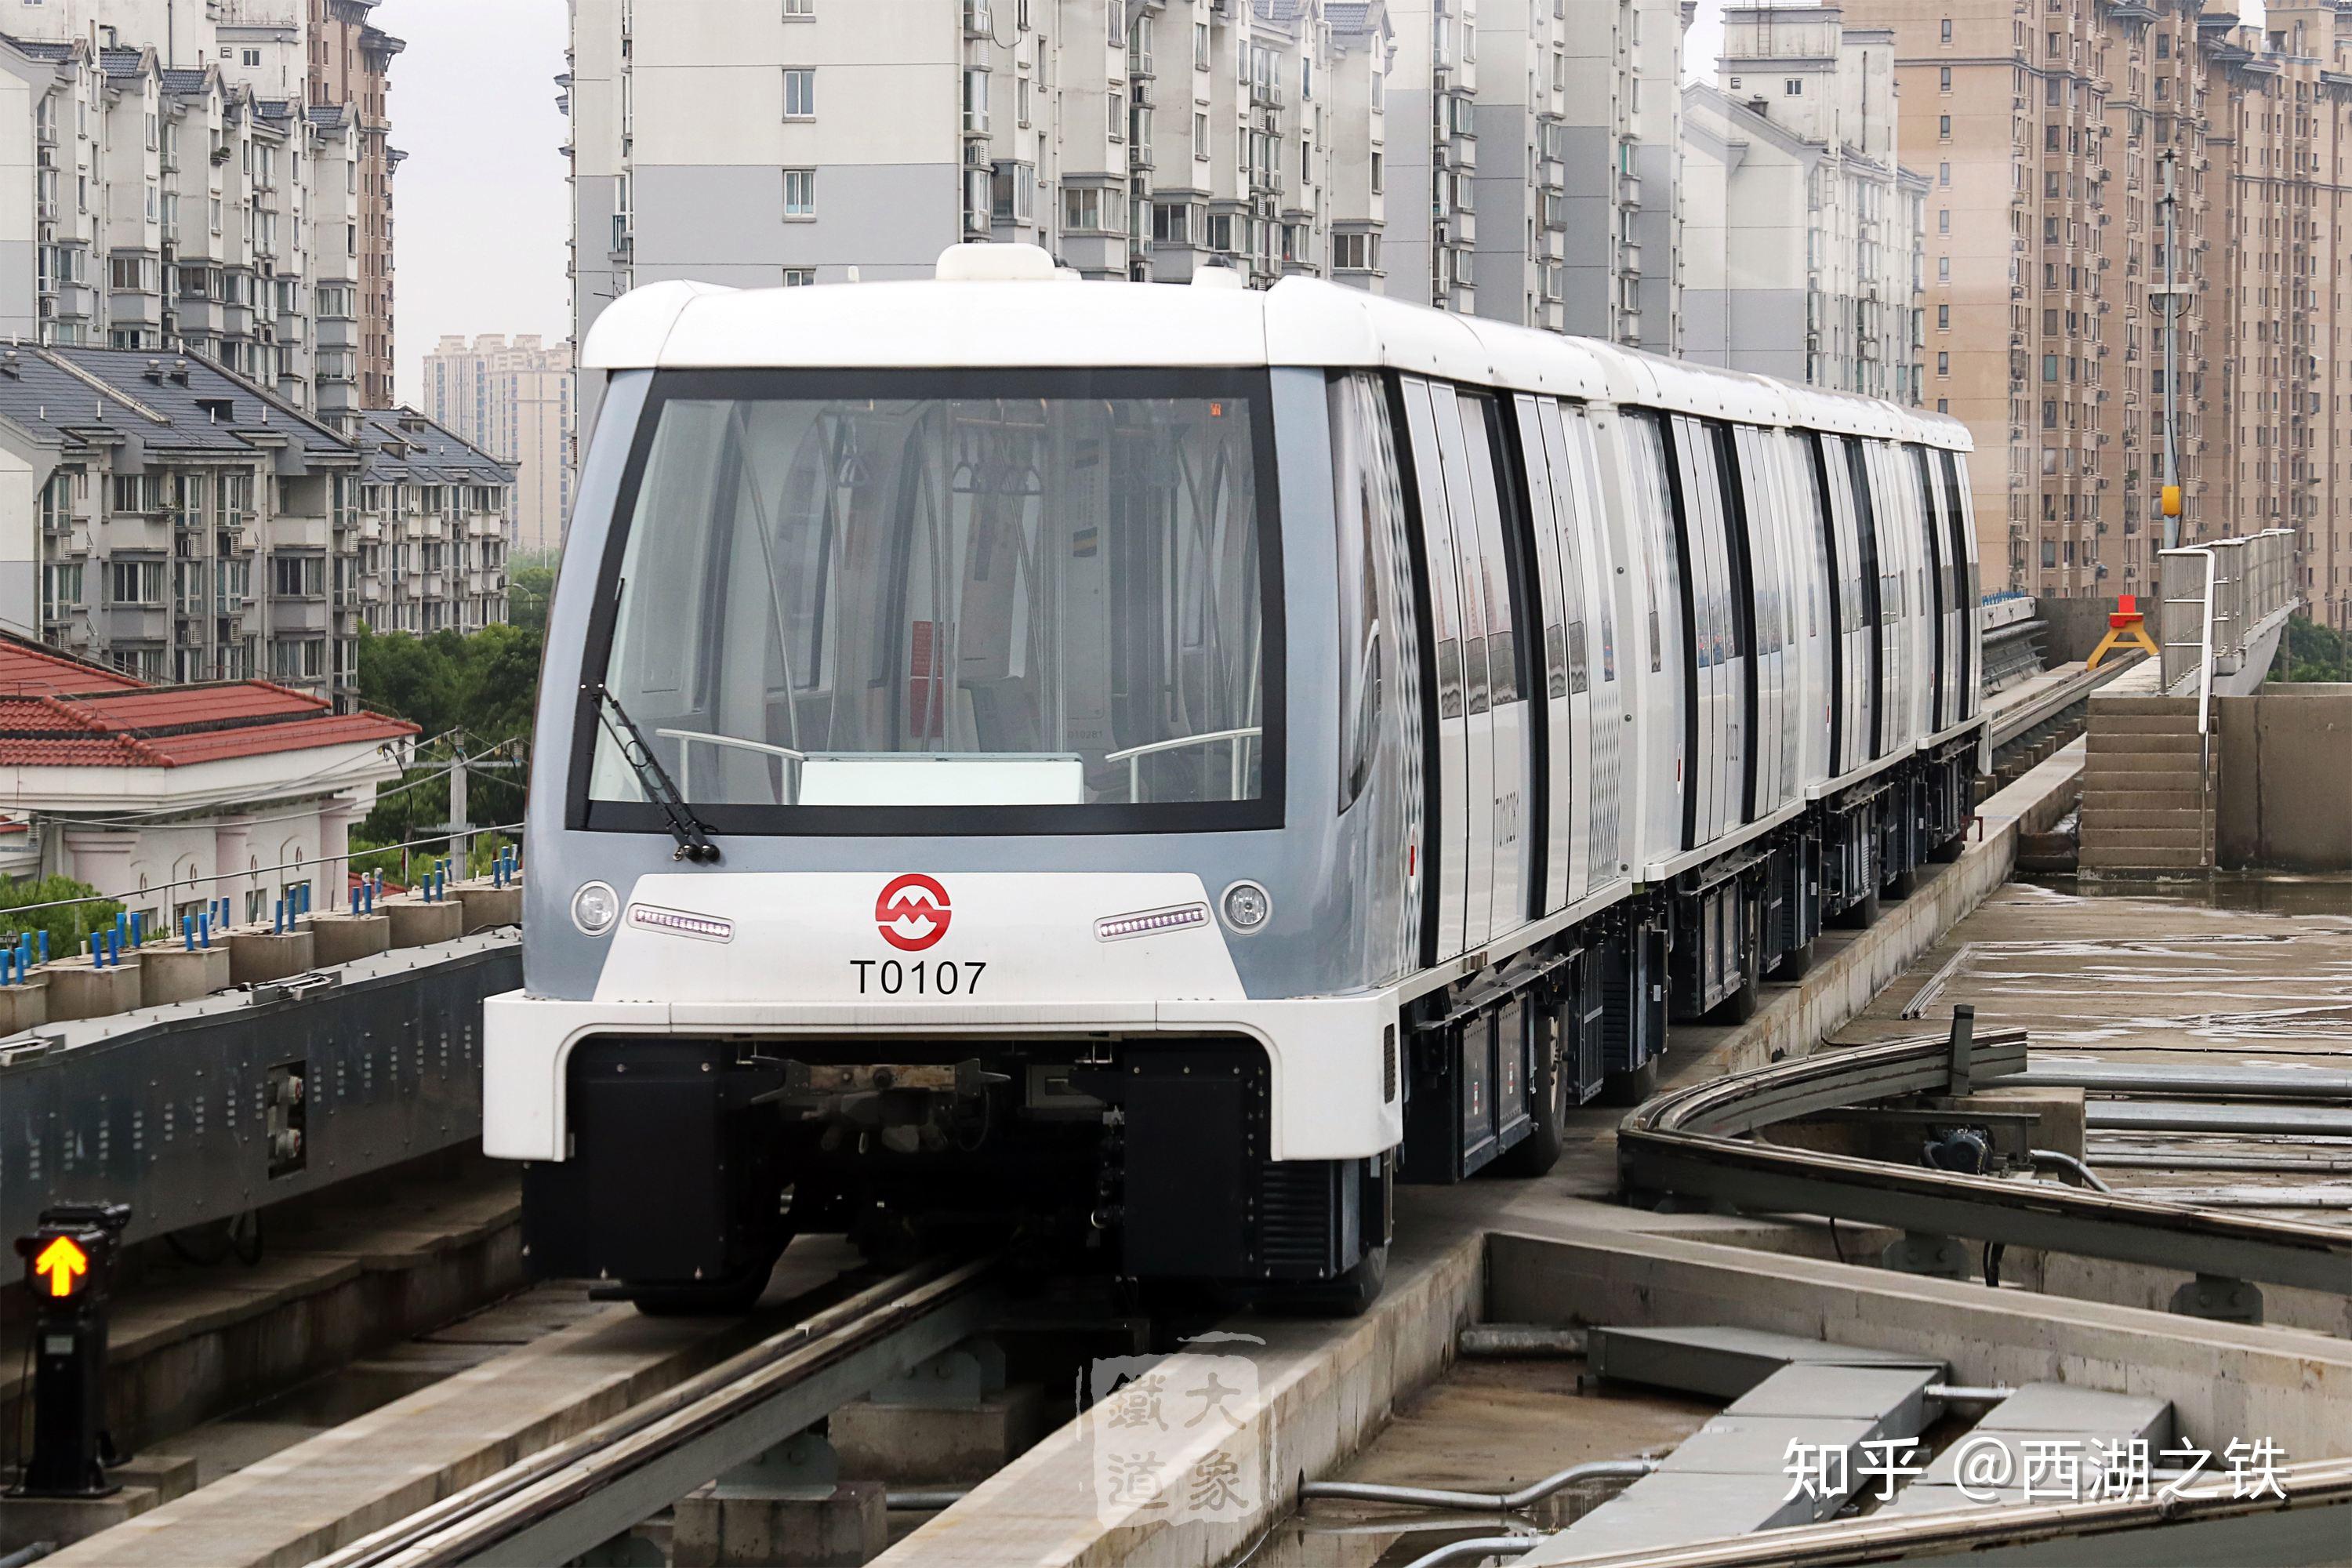 09米/节,宽3米,代表车型为上海地铁浦江线,广州地铁apm线